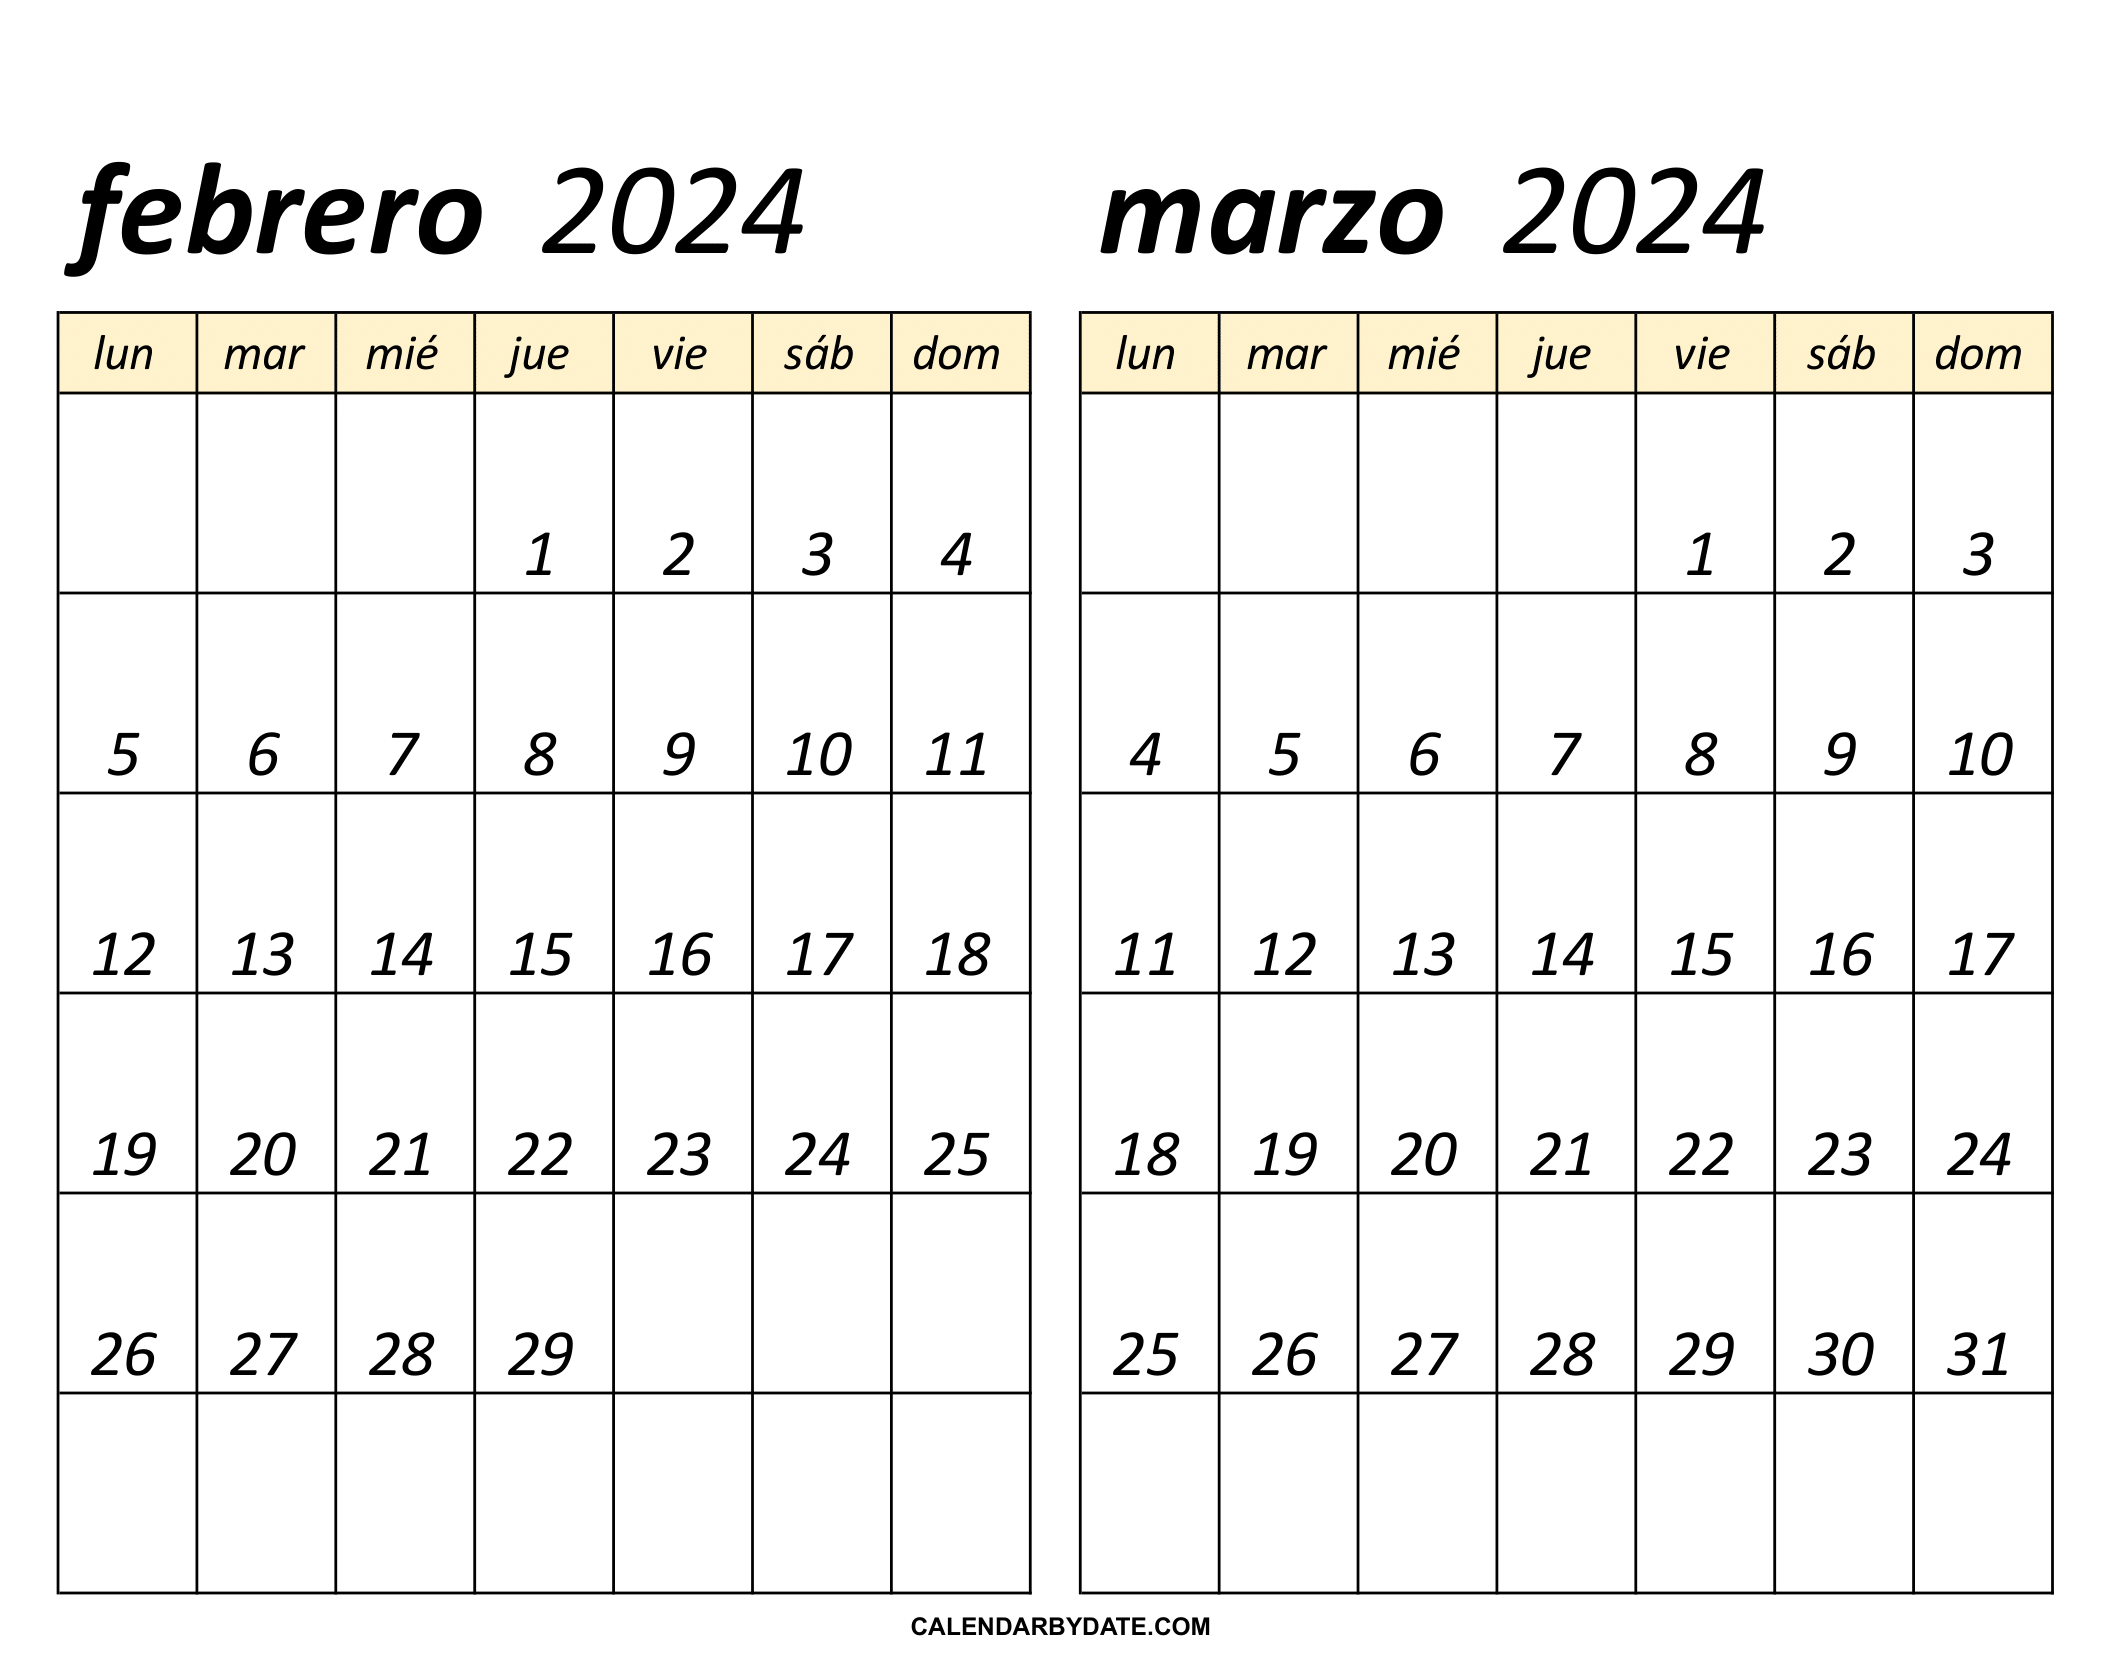 calendario de febrero a marzo 2024